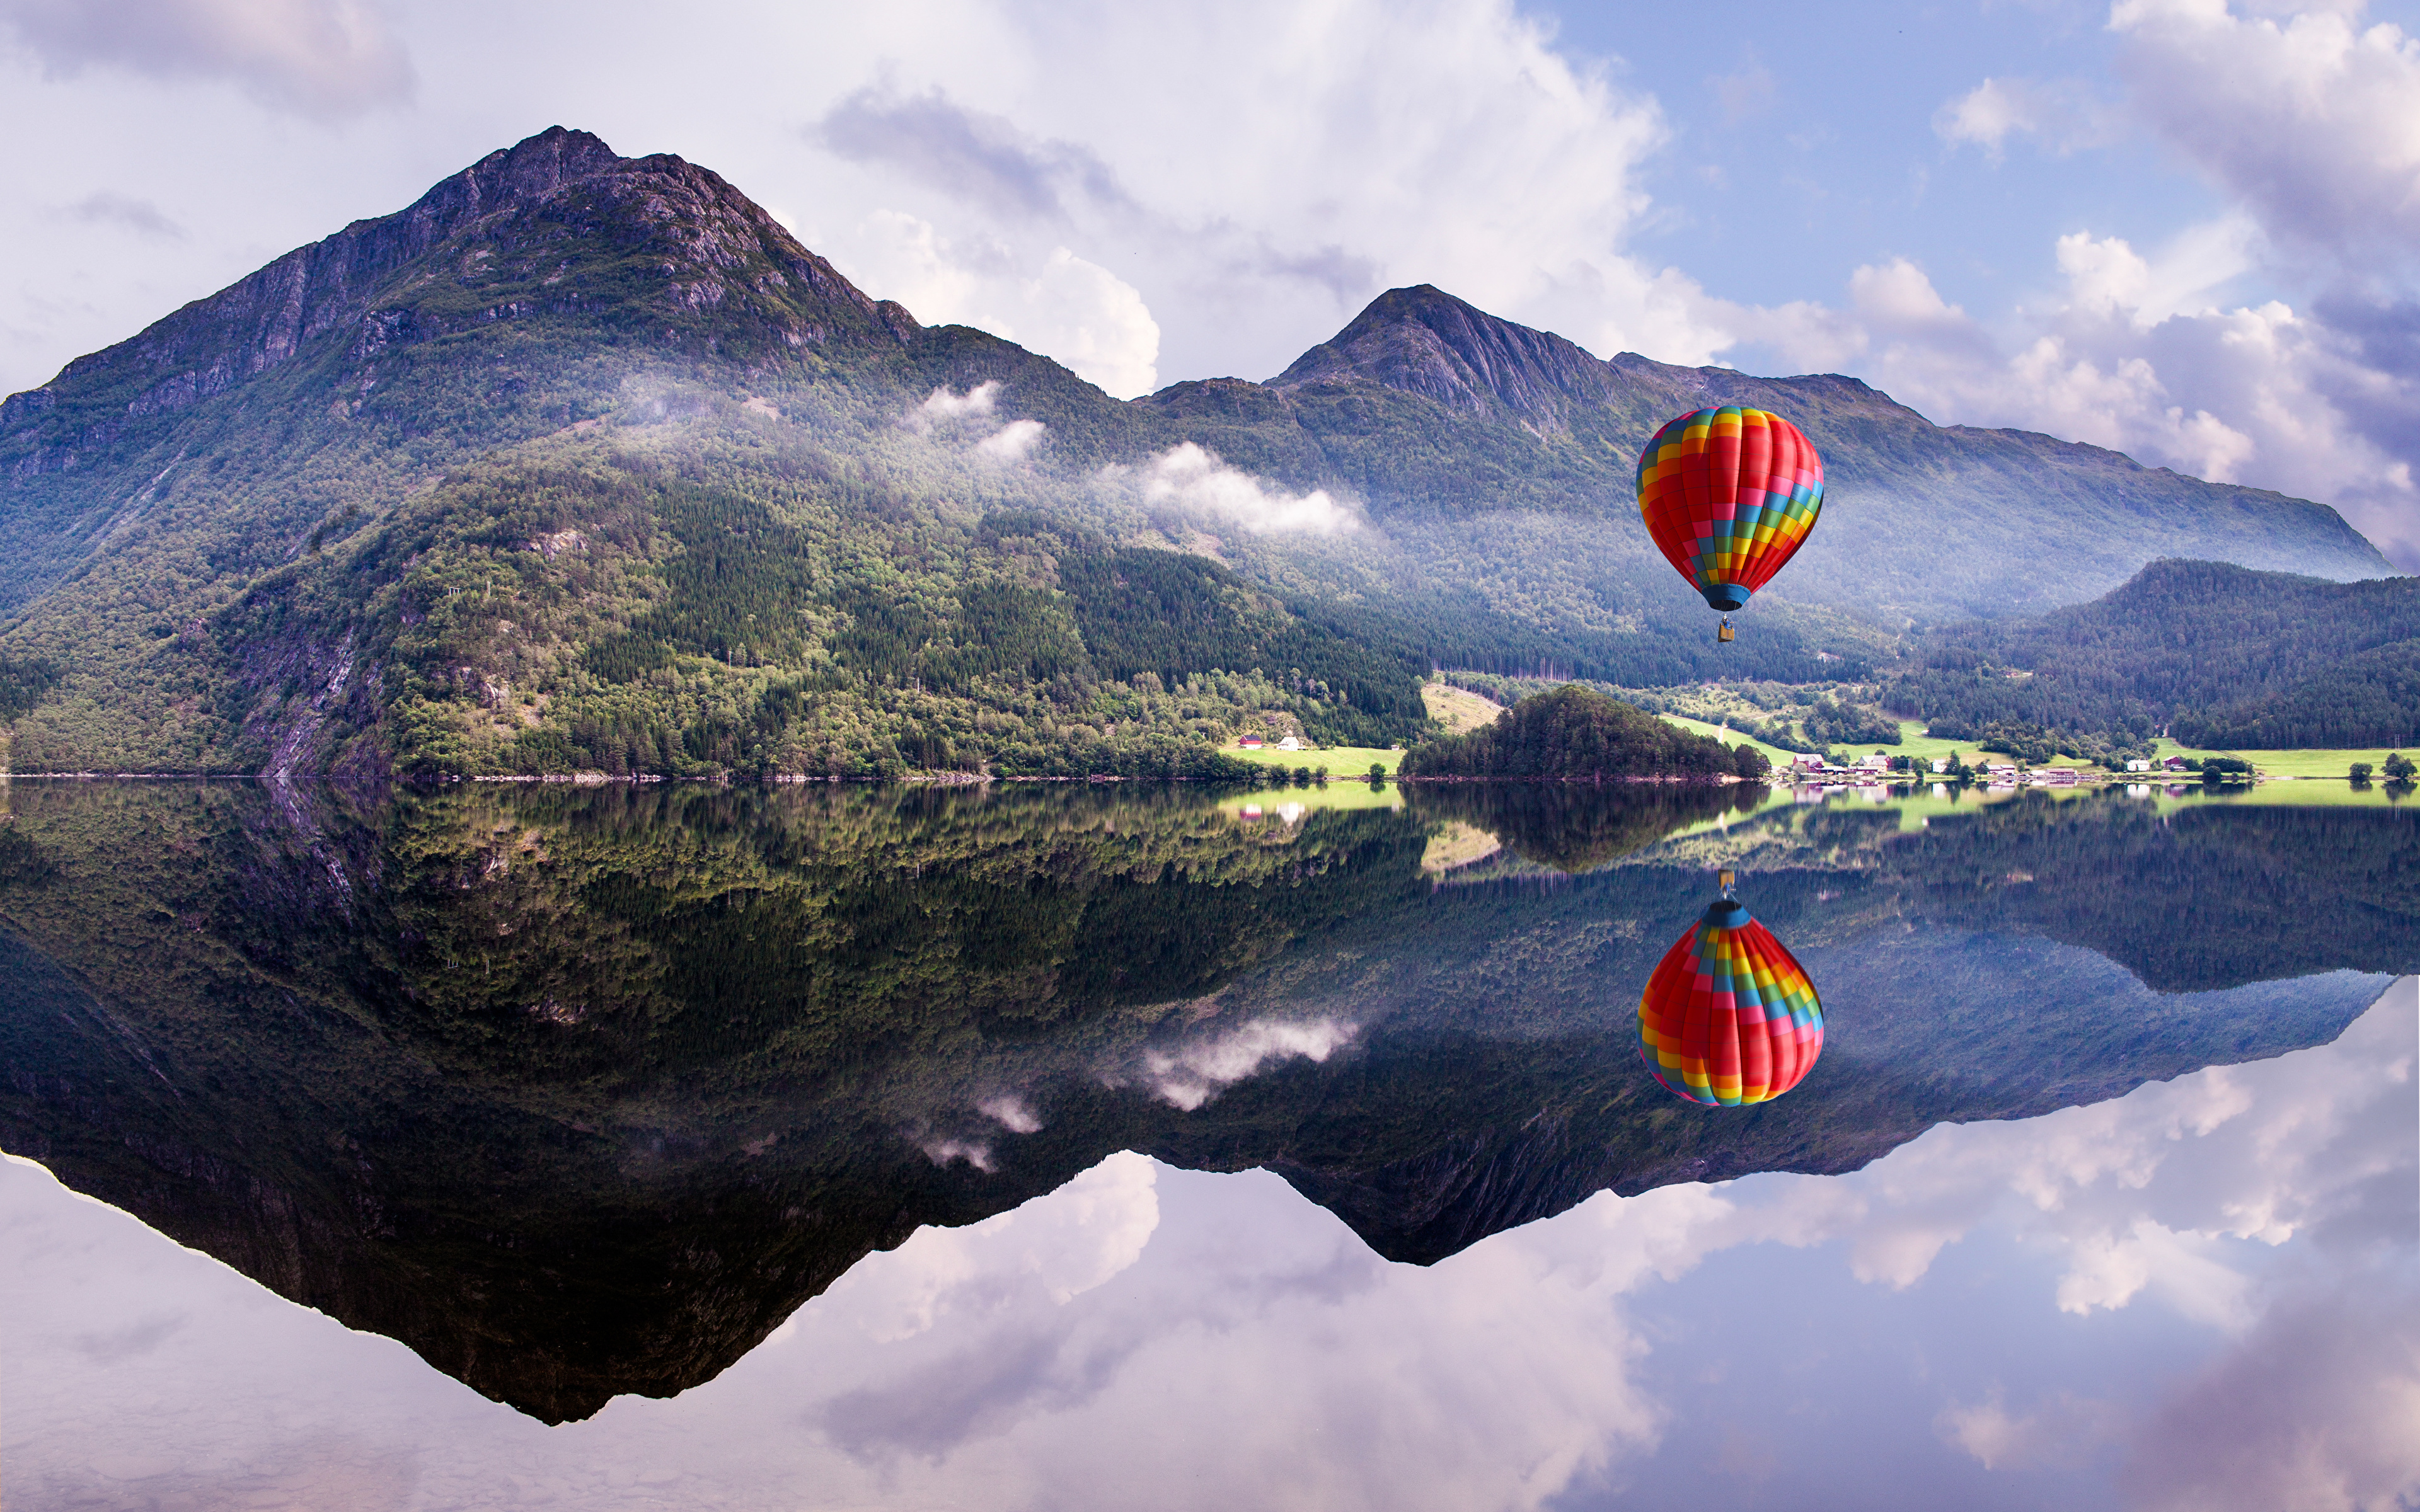 Hot lake. Завораживающие пейзажи. Пейзаж с воздушным шаром. Необычные пейзажи. Удивительная природа.